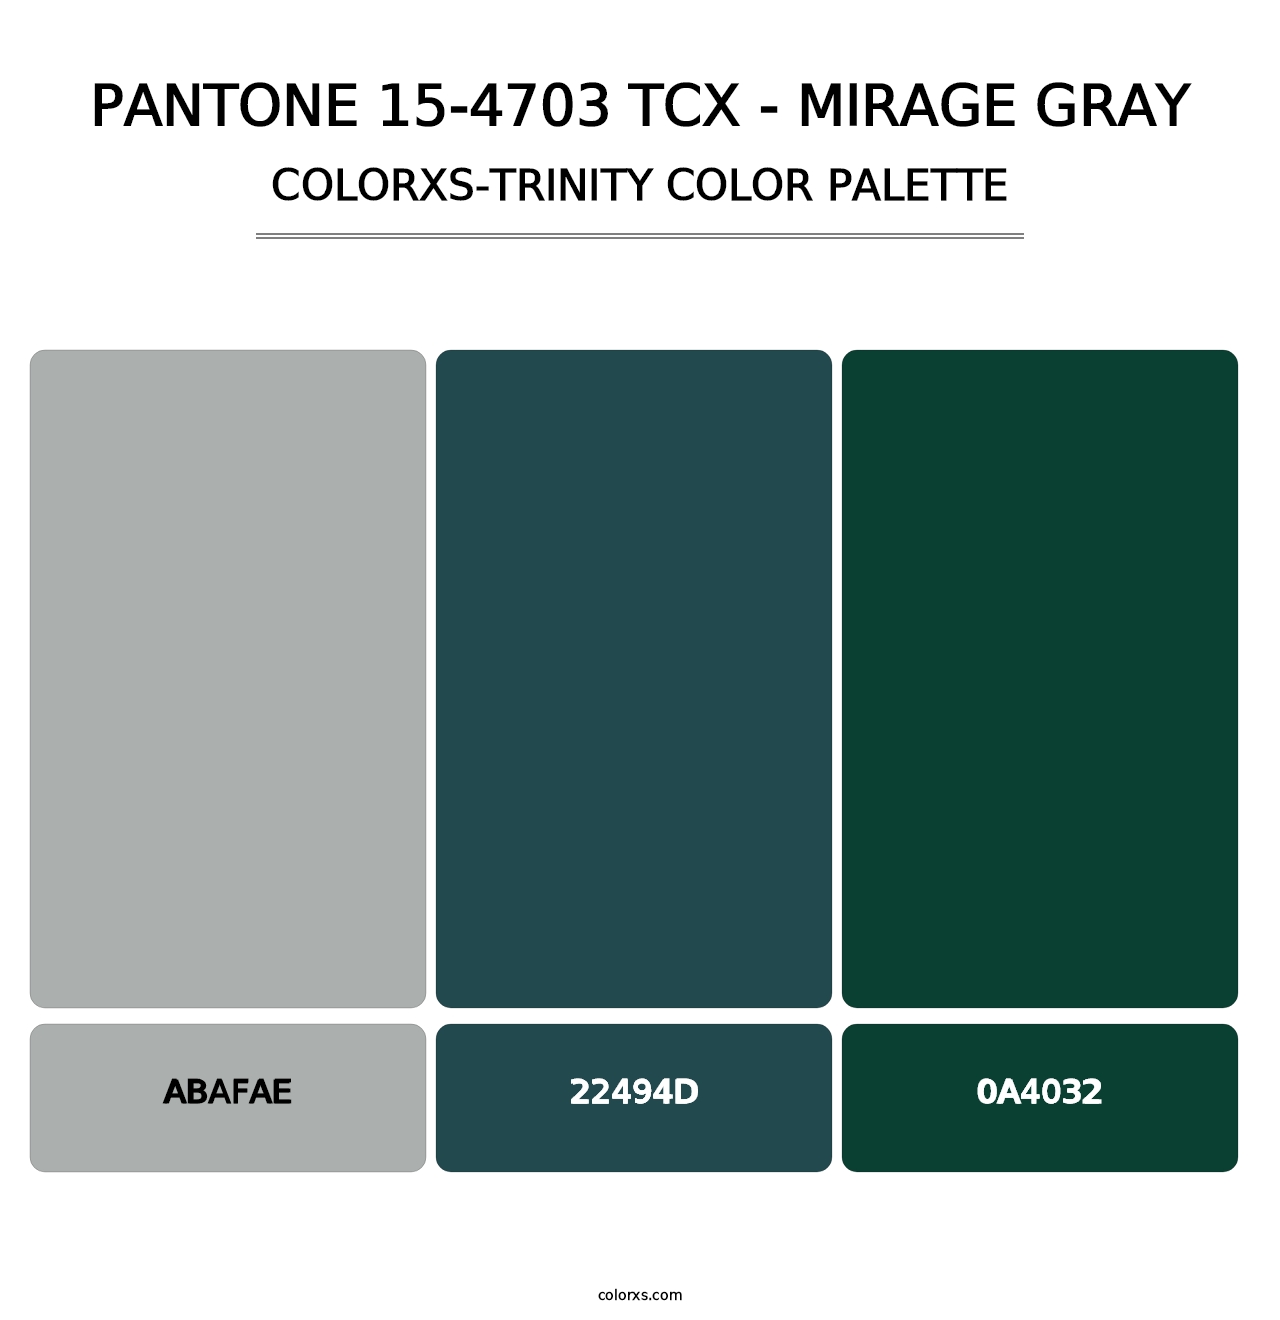 PANTONE 15-4703 TCX - Mirage Gray - Colorxs Trinity Palette